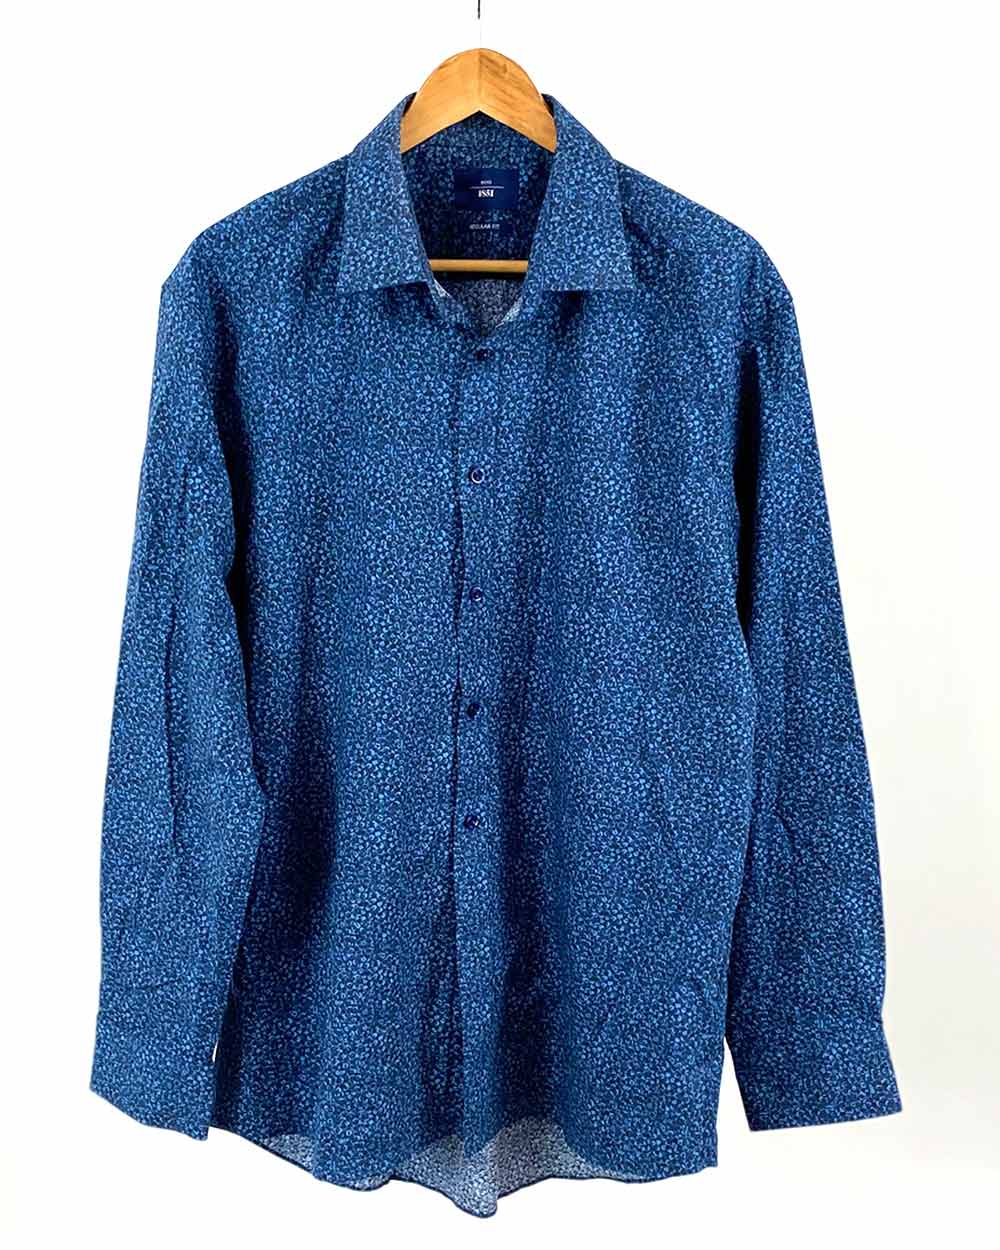 Moss Bros Blue Patterned Shirt Reg Fit